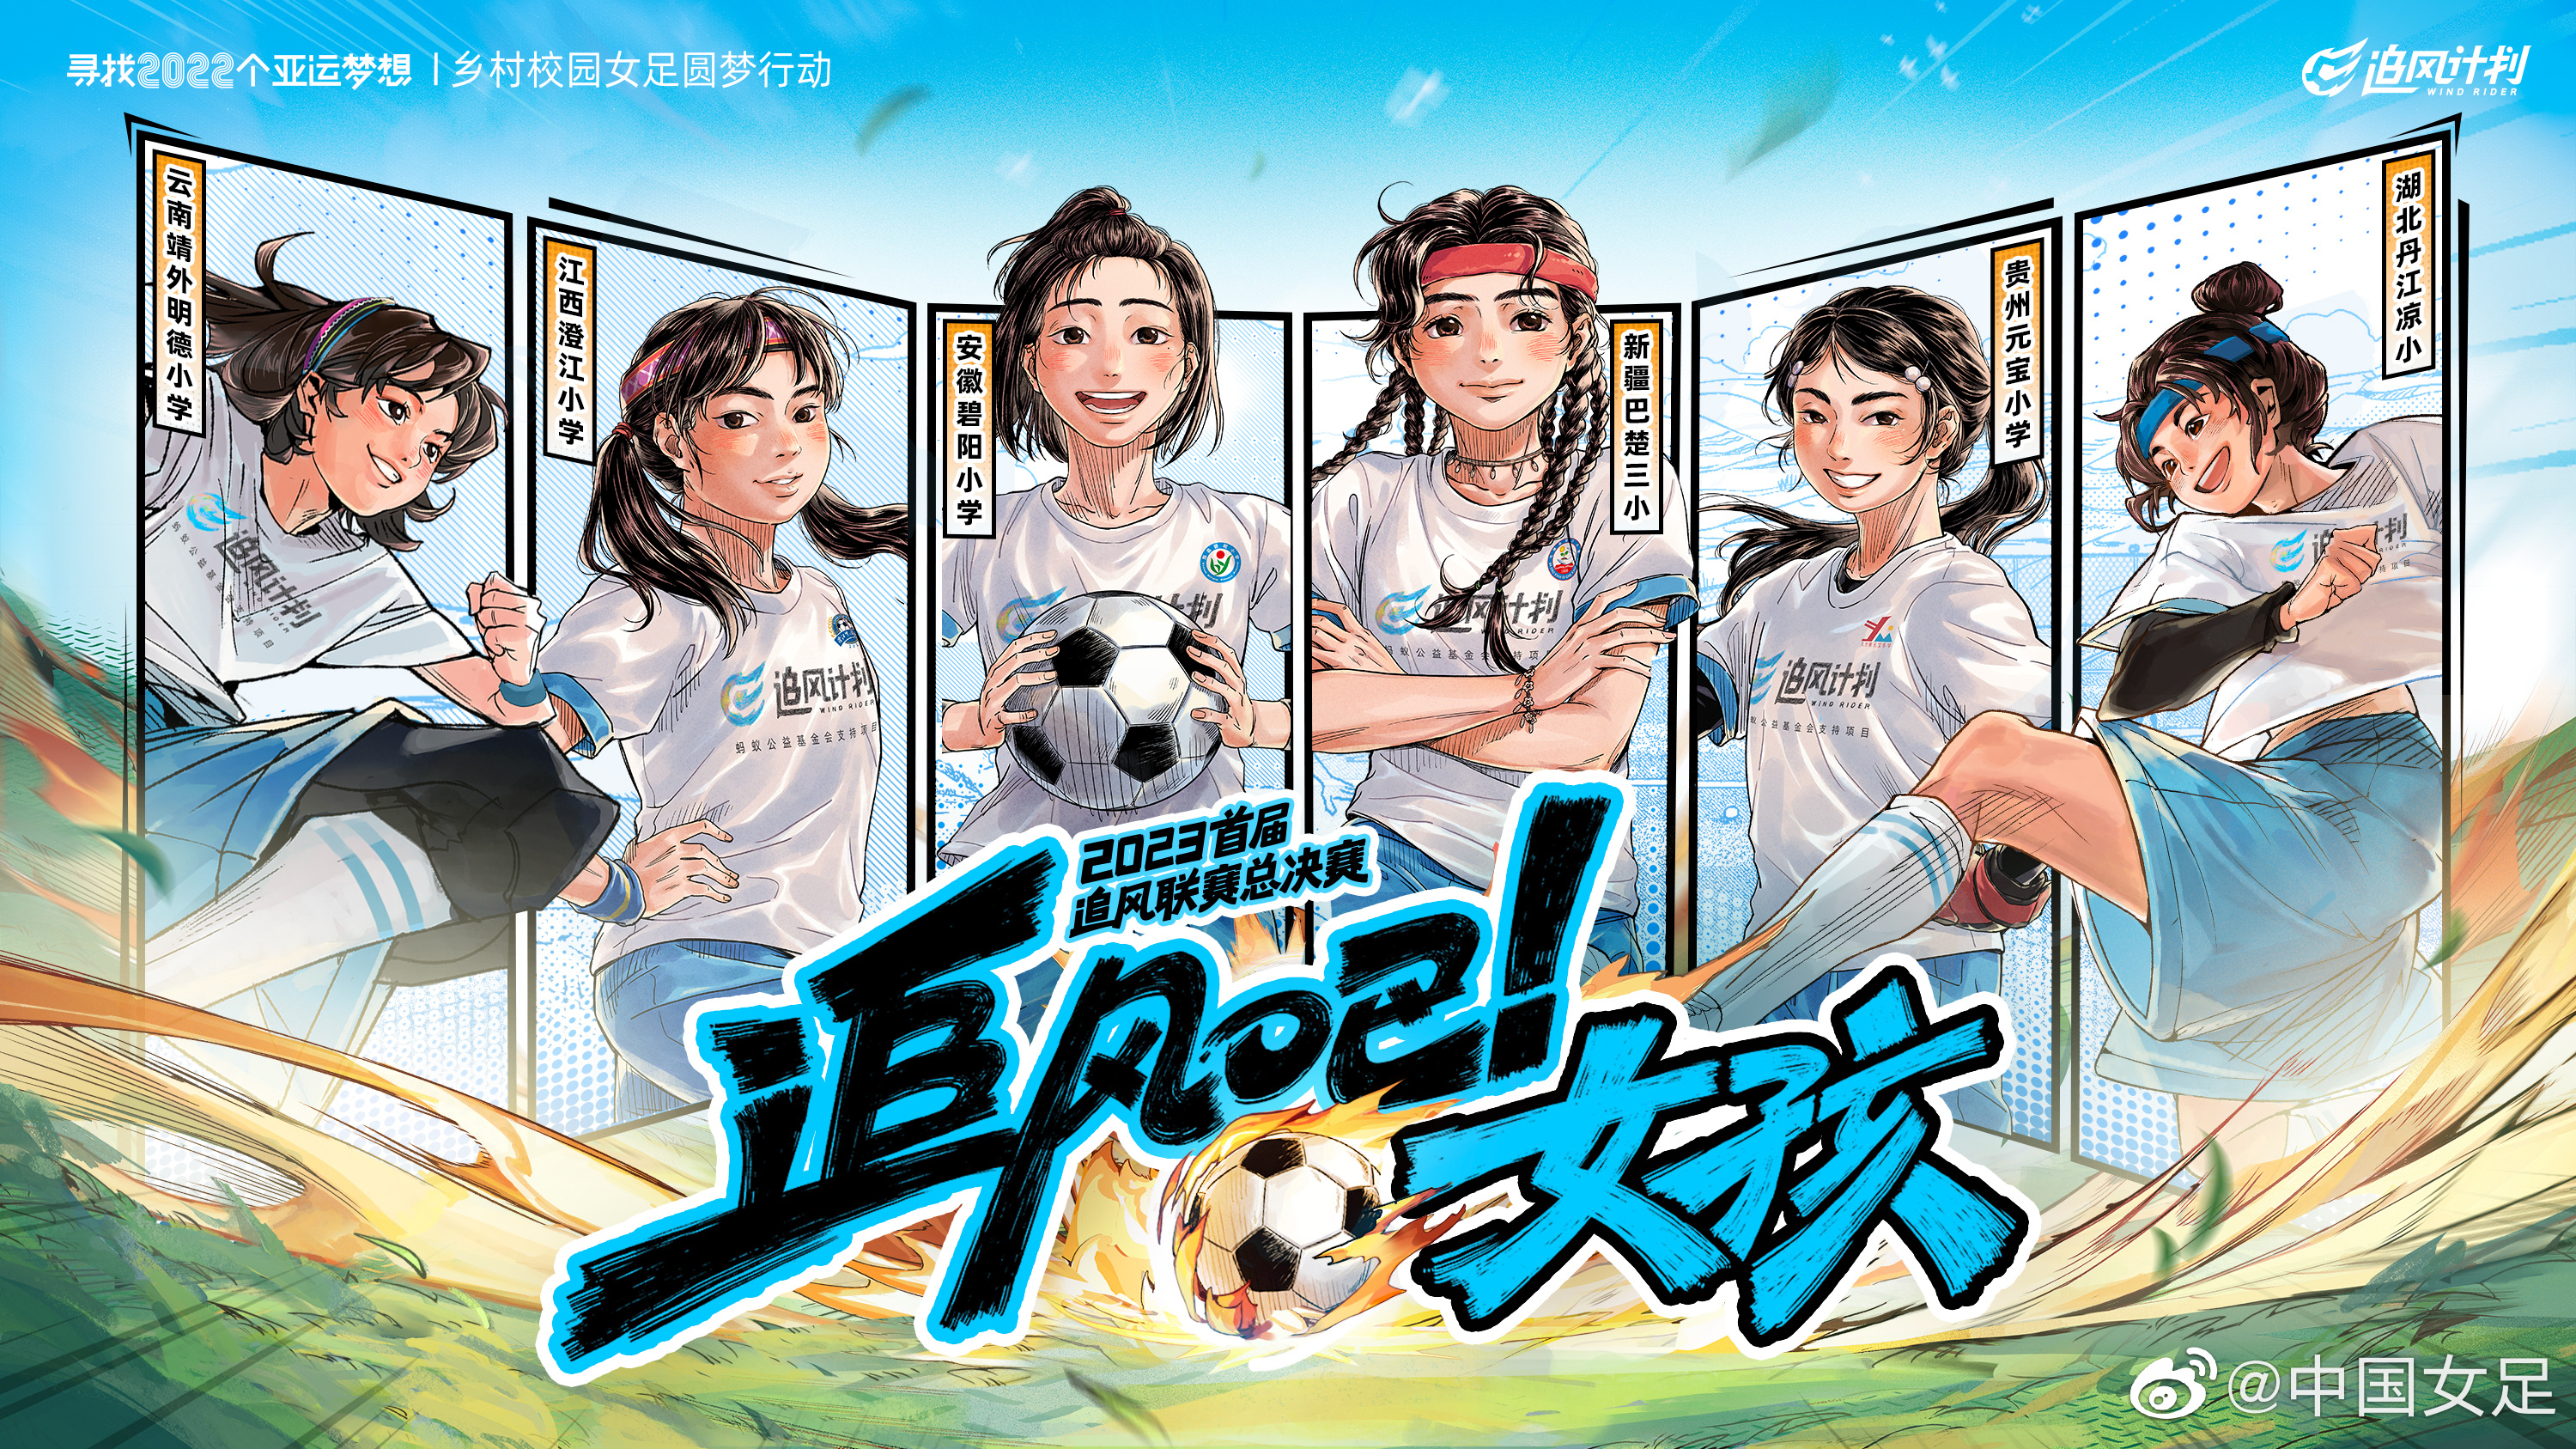 首个全国乡村校园女足联赛“追风联赛”总决赛本周末在杭州打响